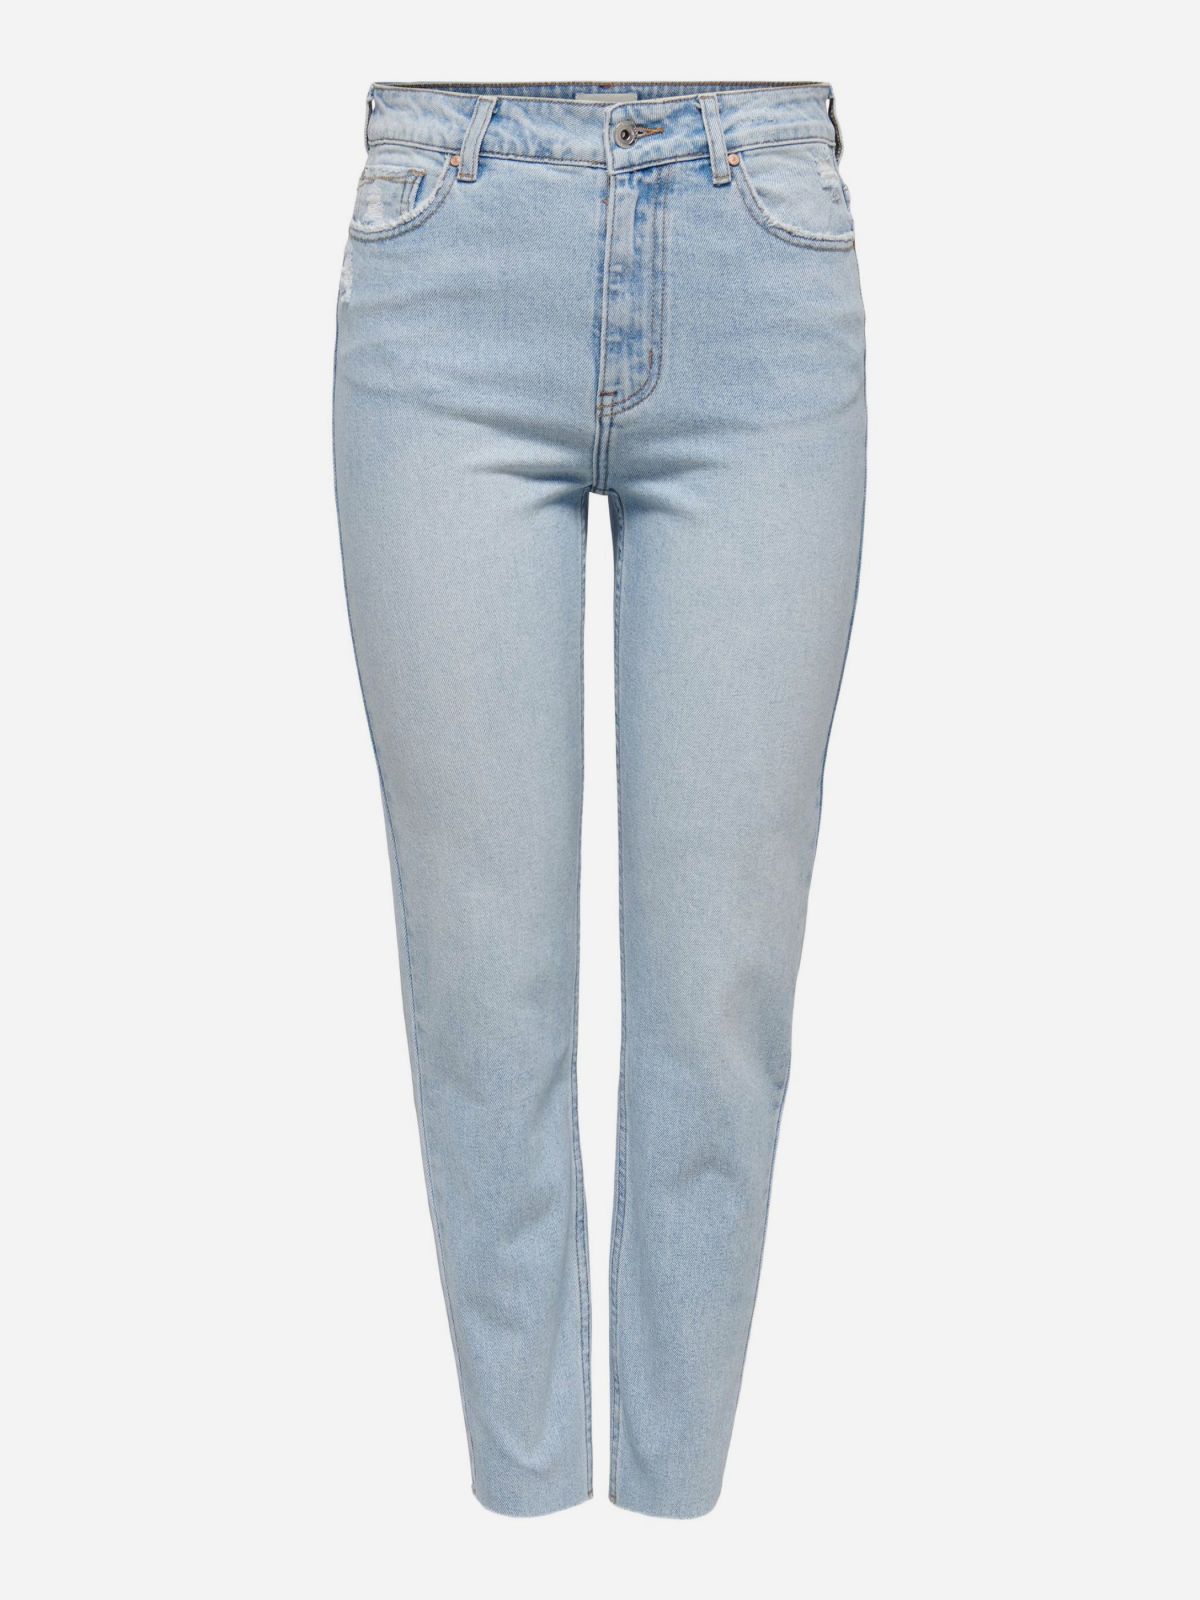  מכנסי ג'ינס בגזרה ישרה / נשים של ONLY